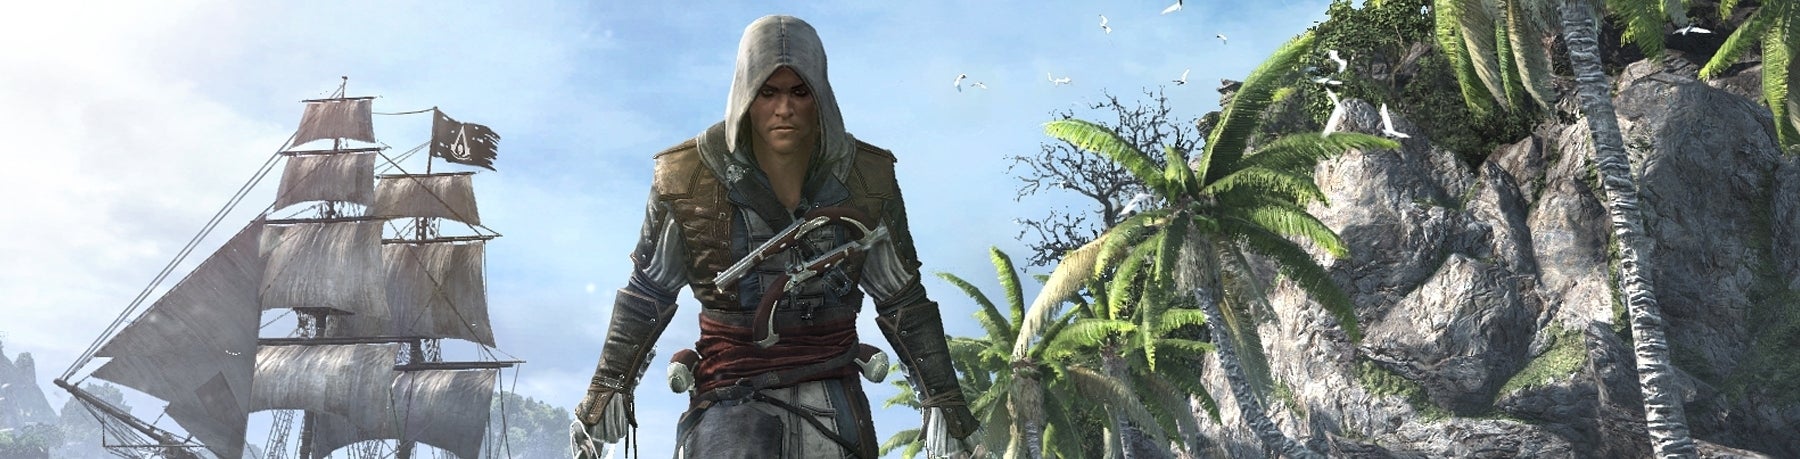 Afbeeldingen van Assassin's Creed IV: Black Flag hijst de zeilen